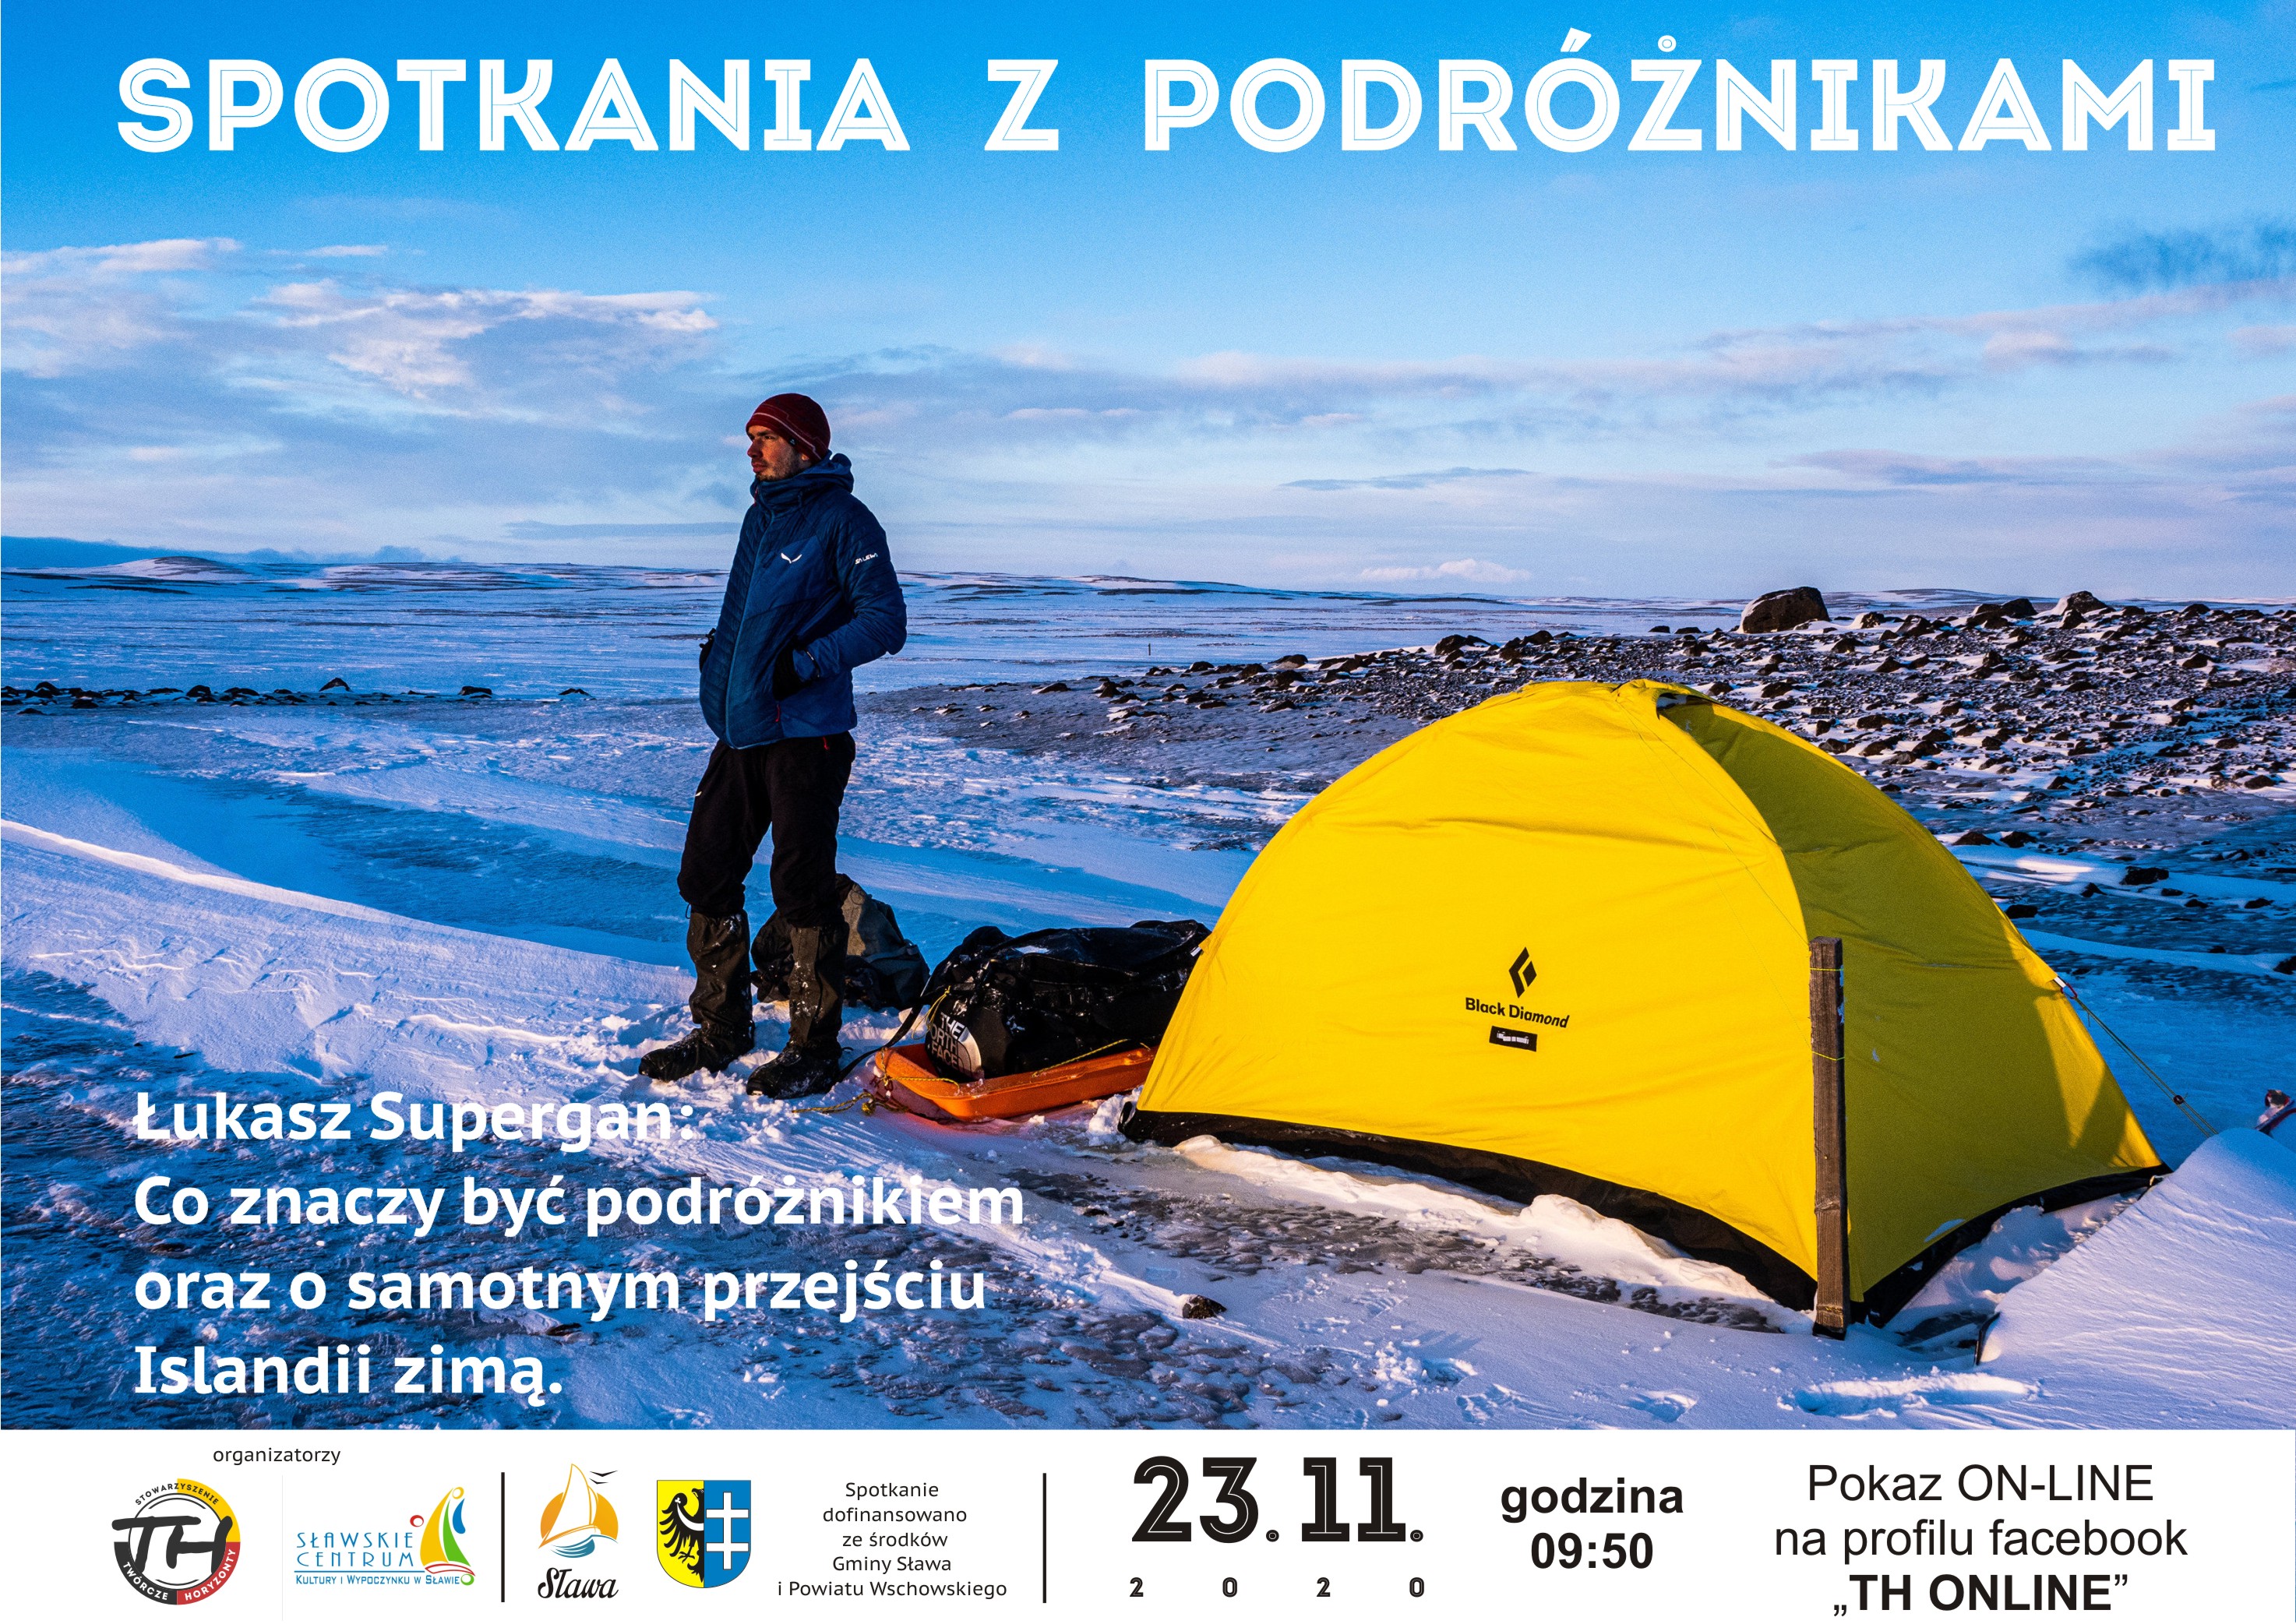 Plakat zapraszający na spotkanie. Żółty namiot na kamienistej plaży w zimowej scenerii obok stoi mężczyzna.